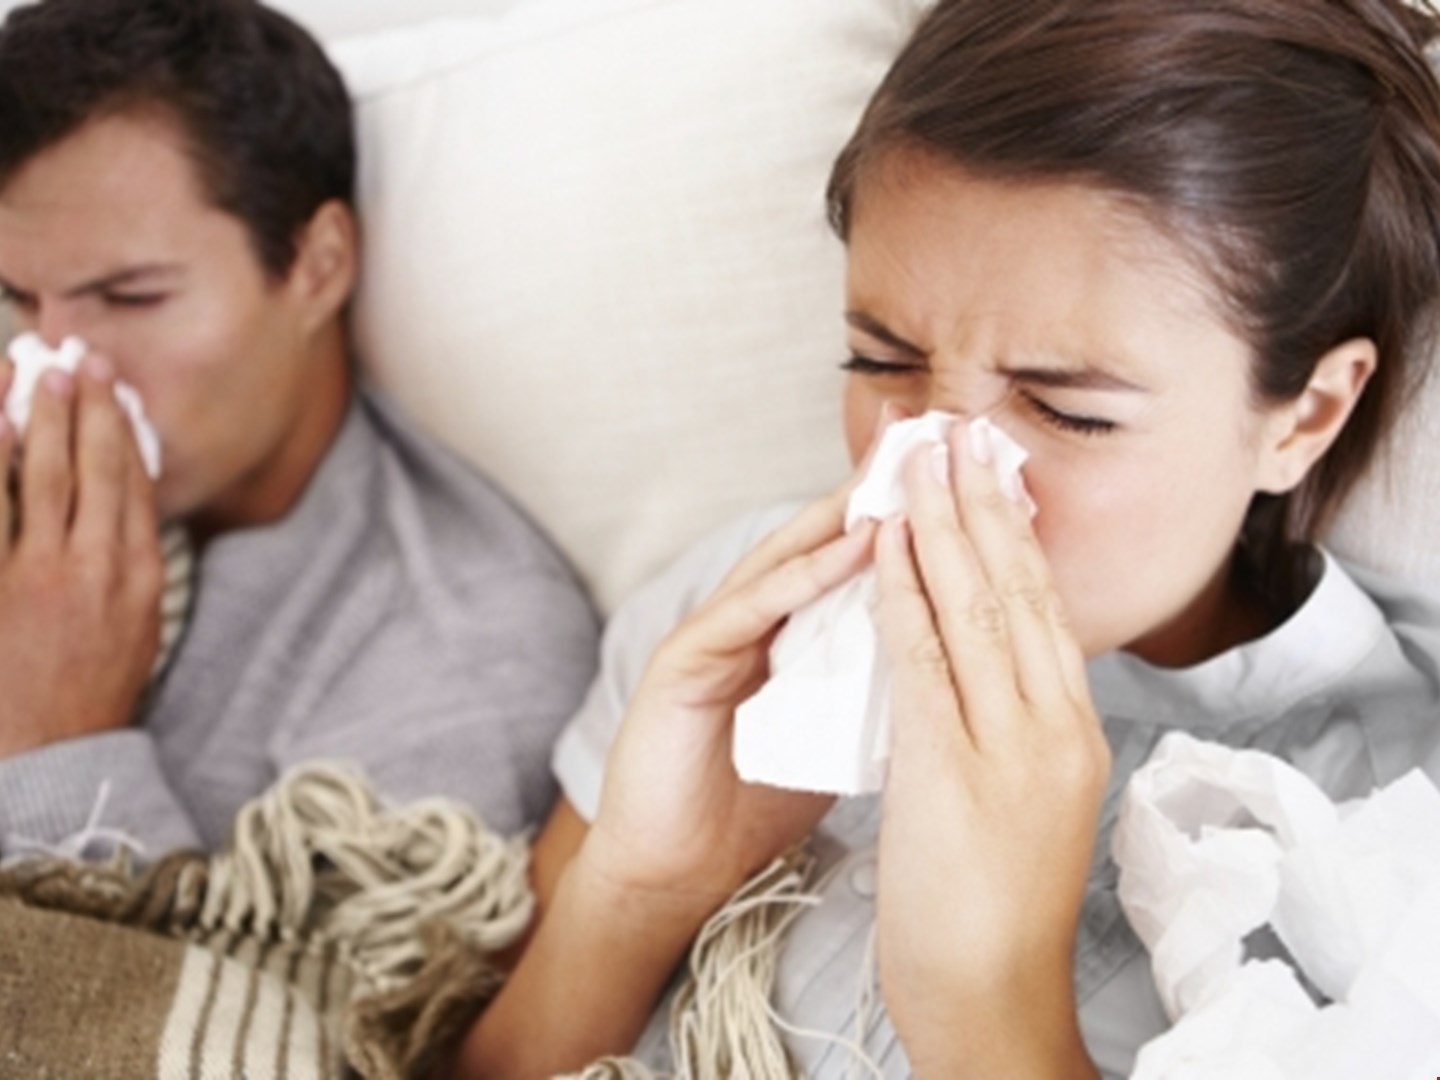 Лечение гриппа и ОРВИ